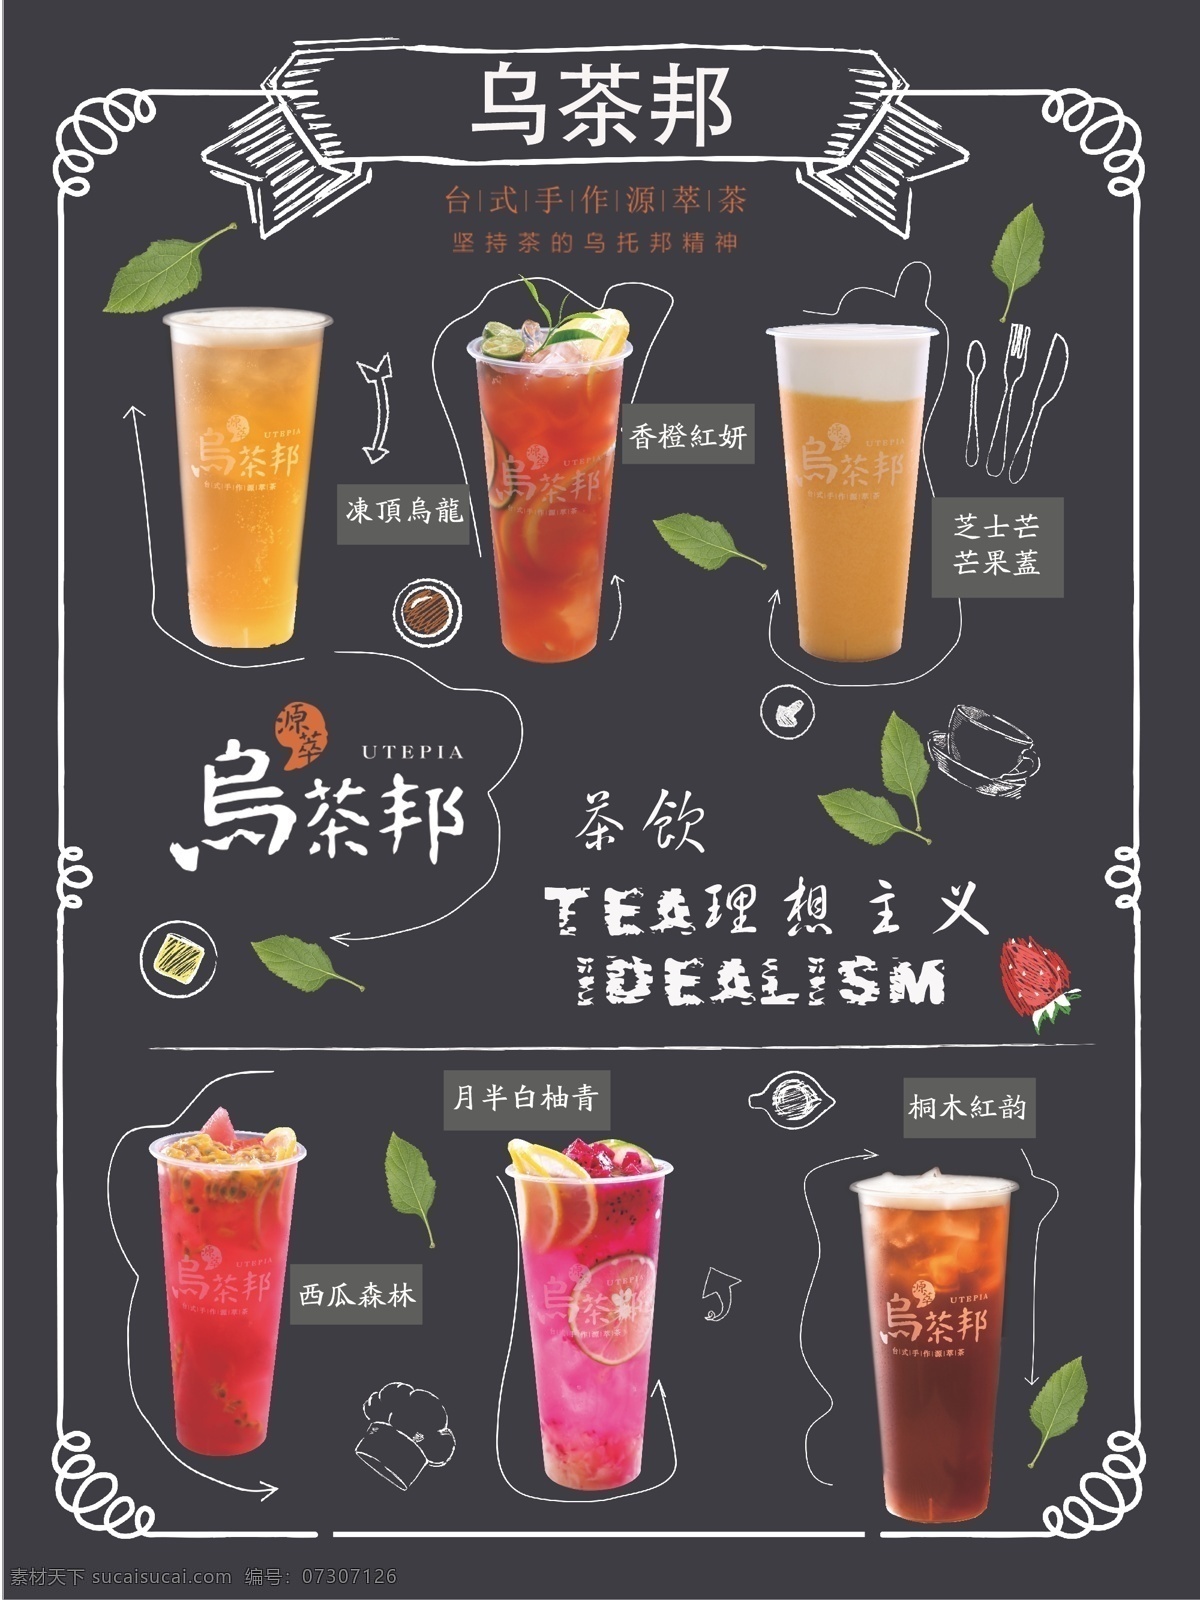 乌 茶 邦 奶茶店 海报 奶茶 品牌 宣传 文化艺术